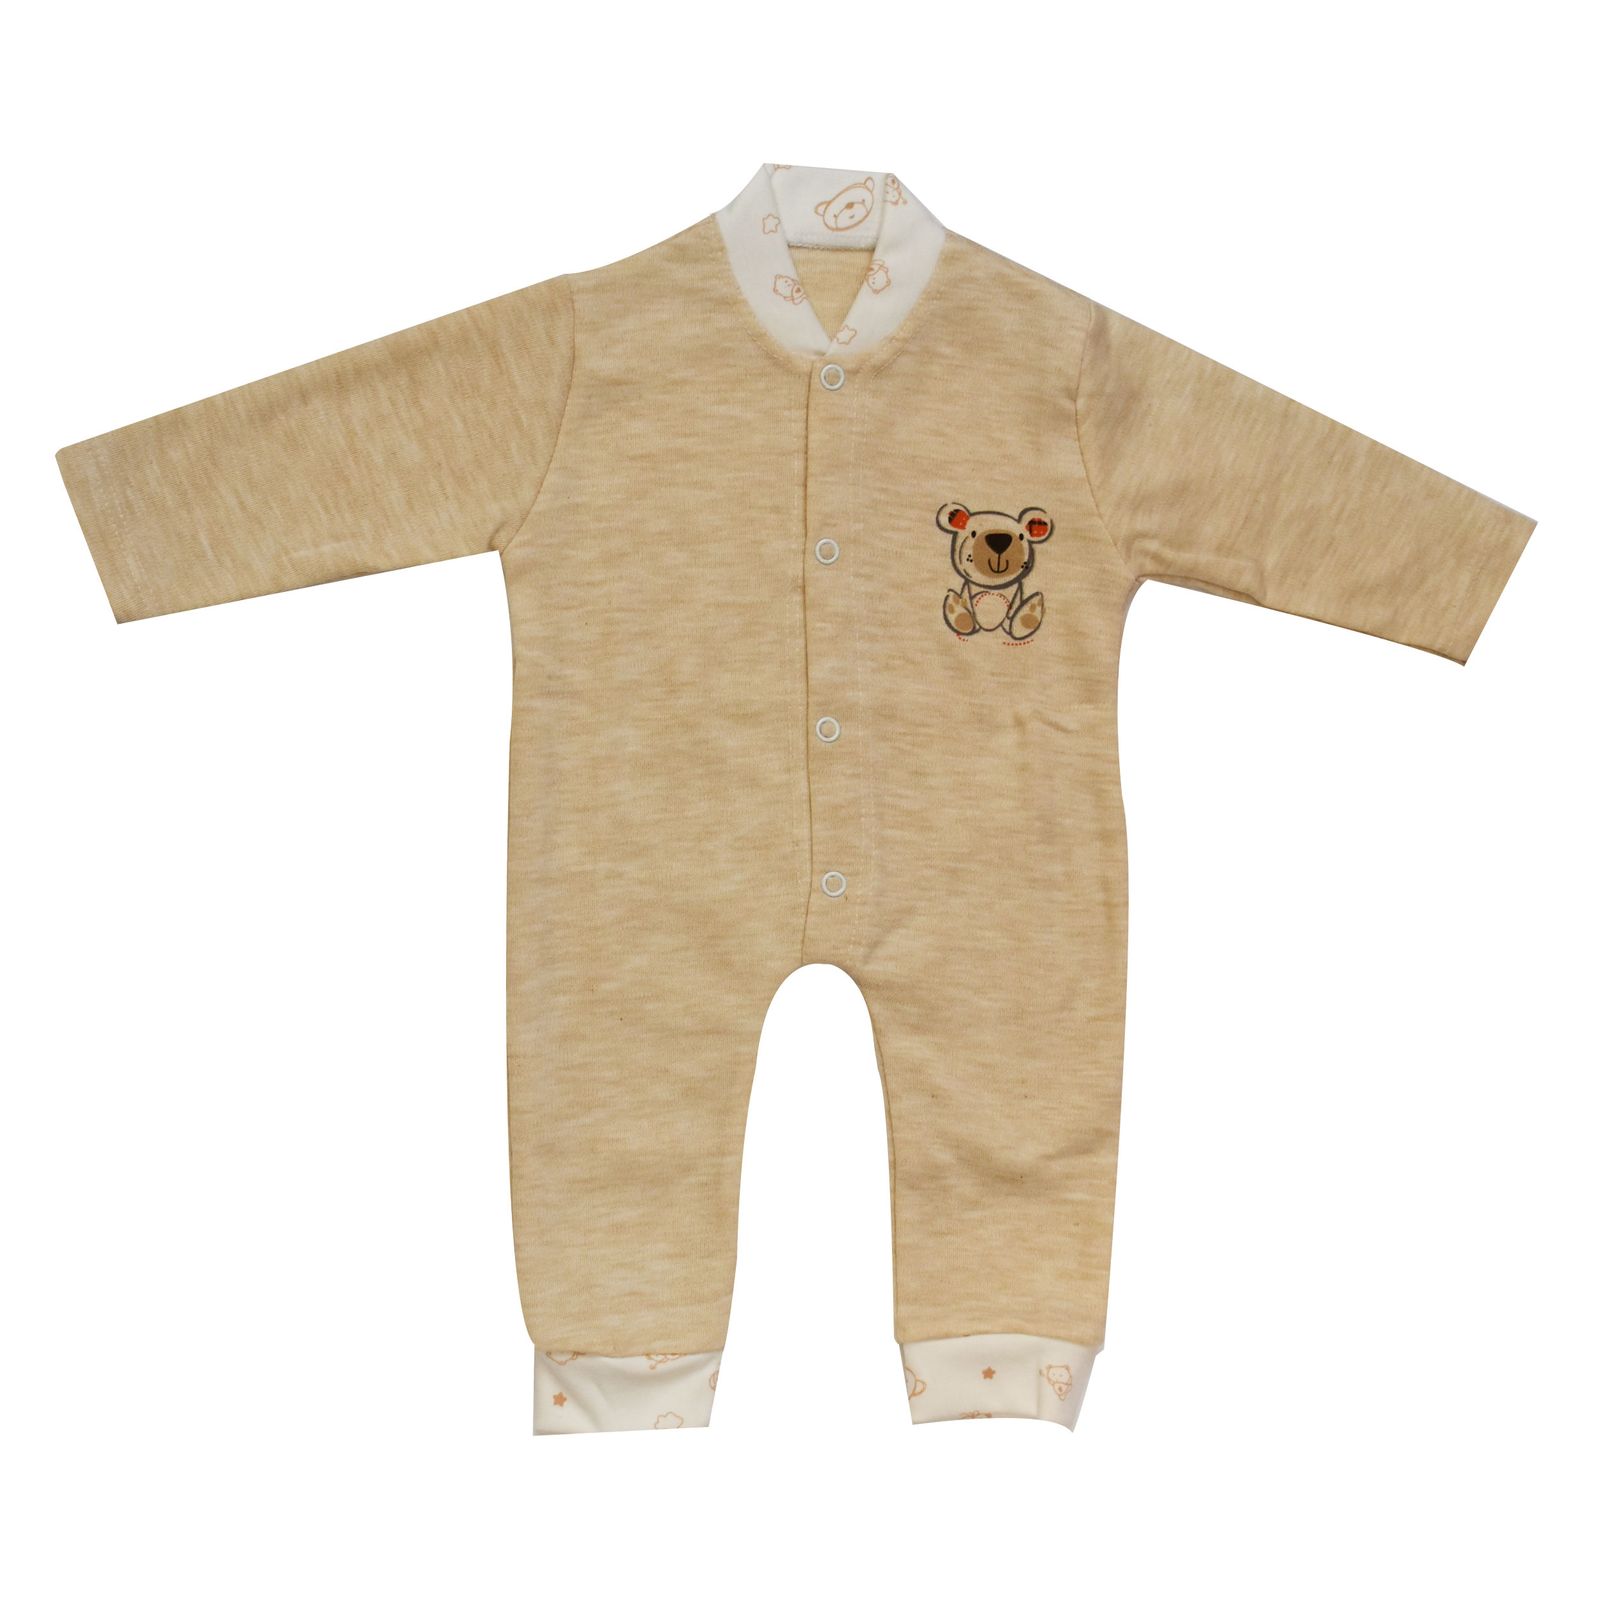  ست 7 تکه لباس نوزادی مادرکر طرح خرس کد M454.8 -  - 7